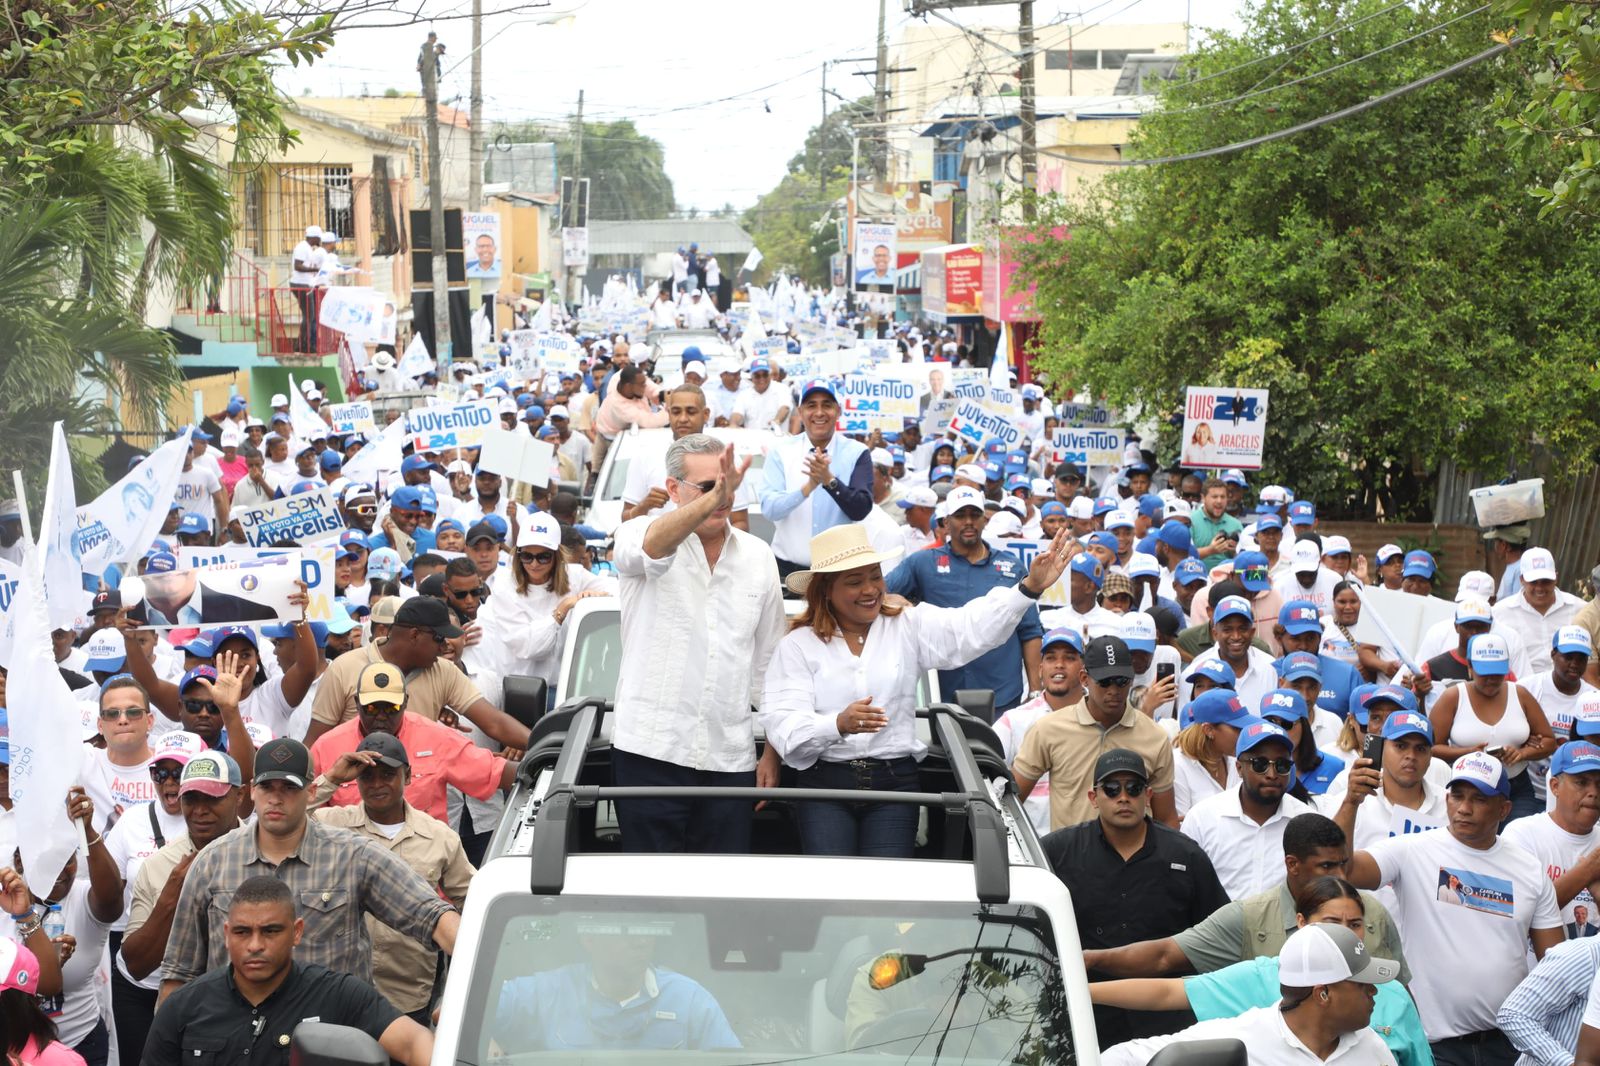 San Pedro de Macorís se desborda en apoyo a la reelección de Luis Abinader  - Últimas Noticias de la República Dominicana